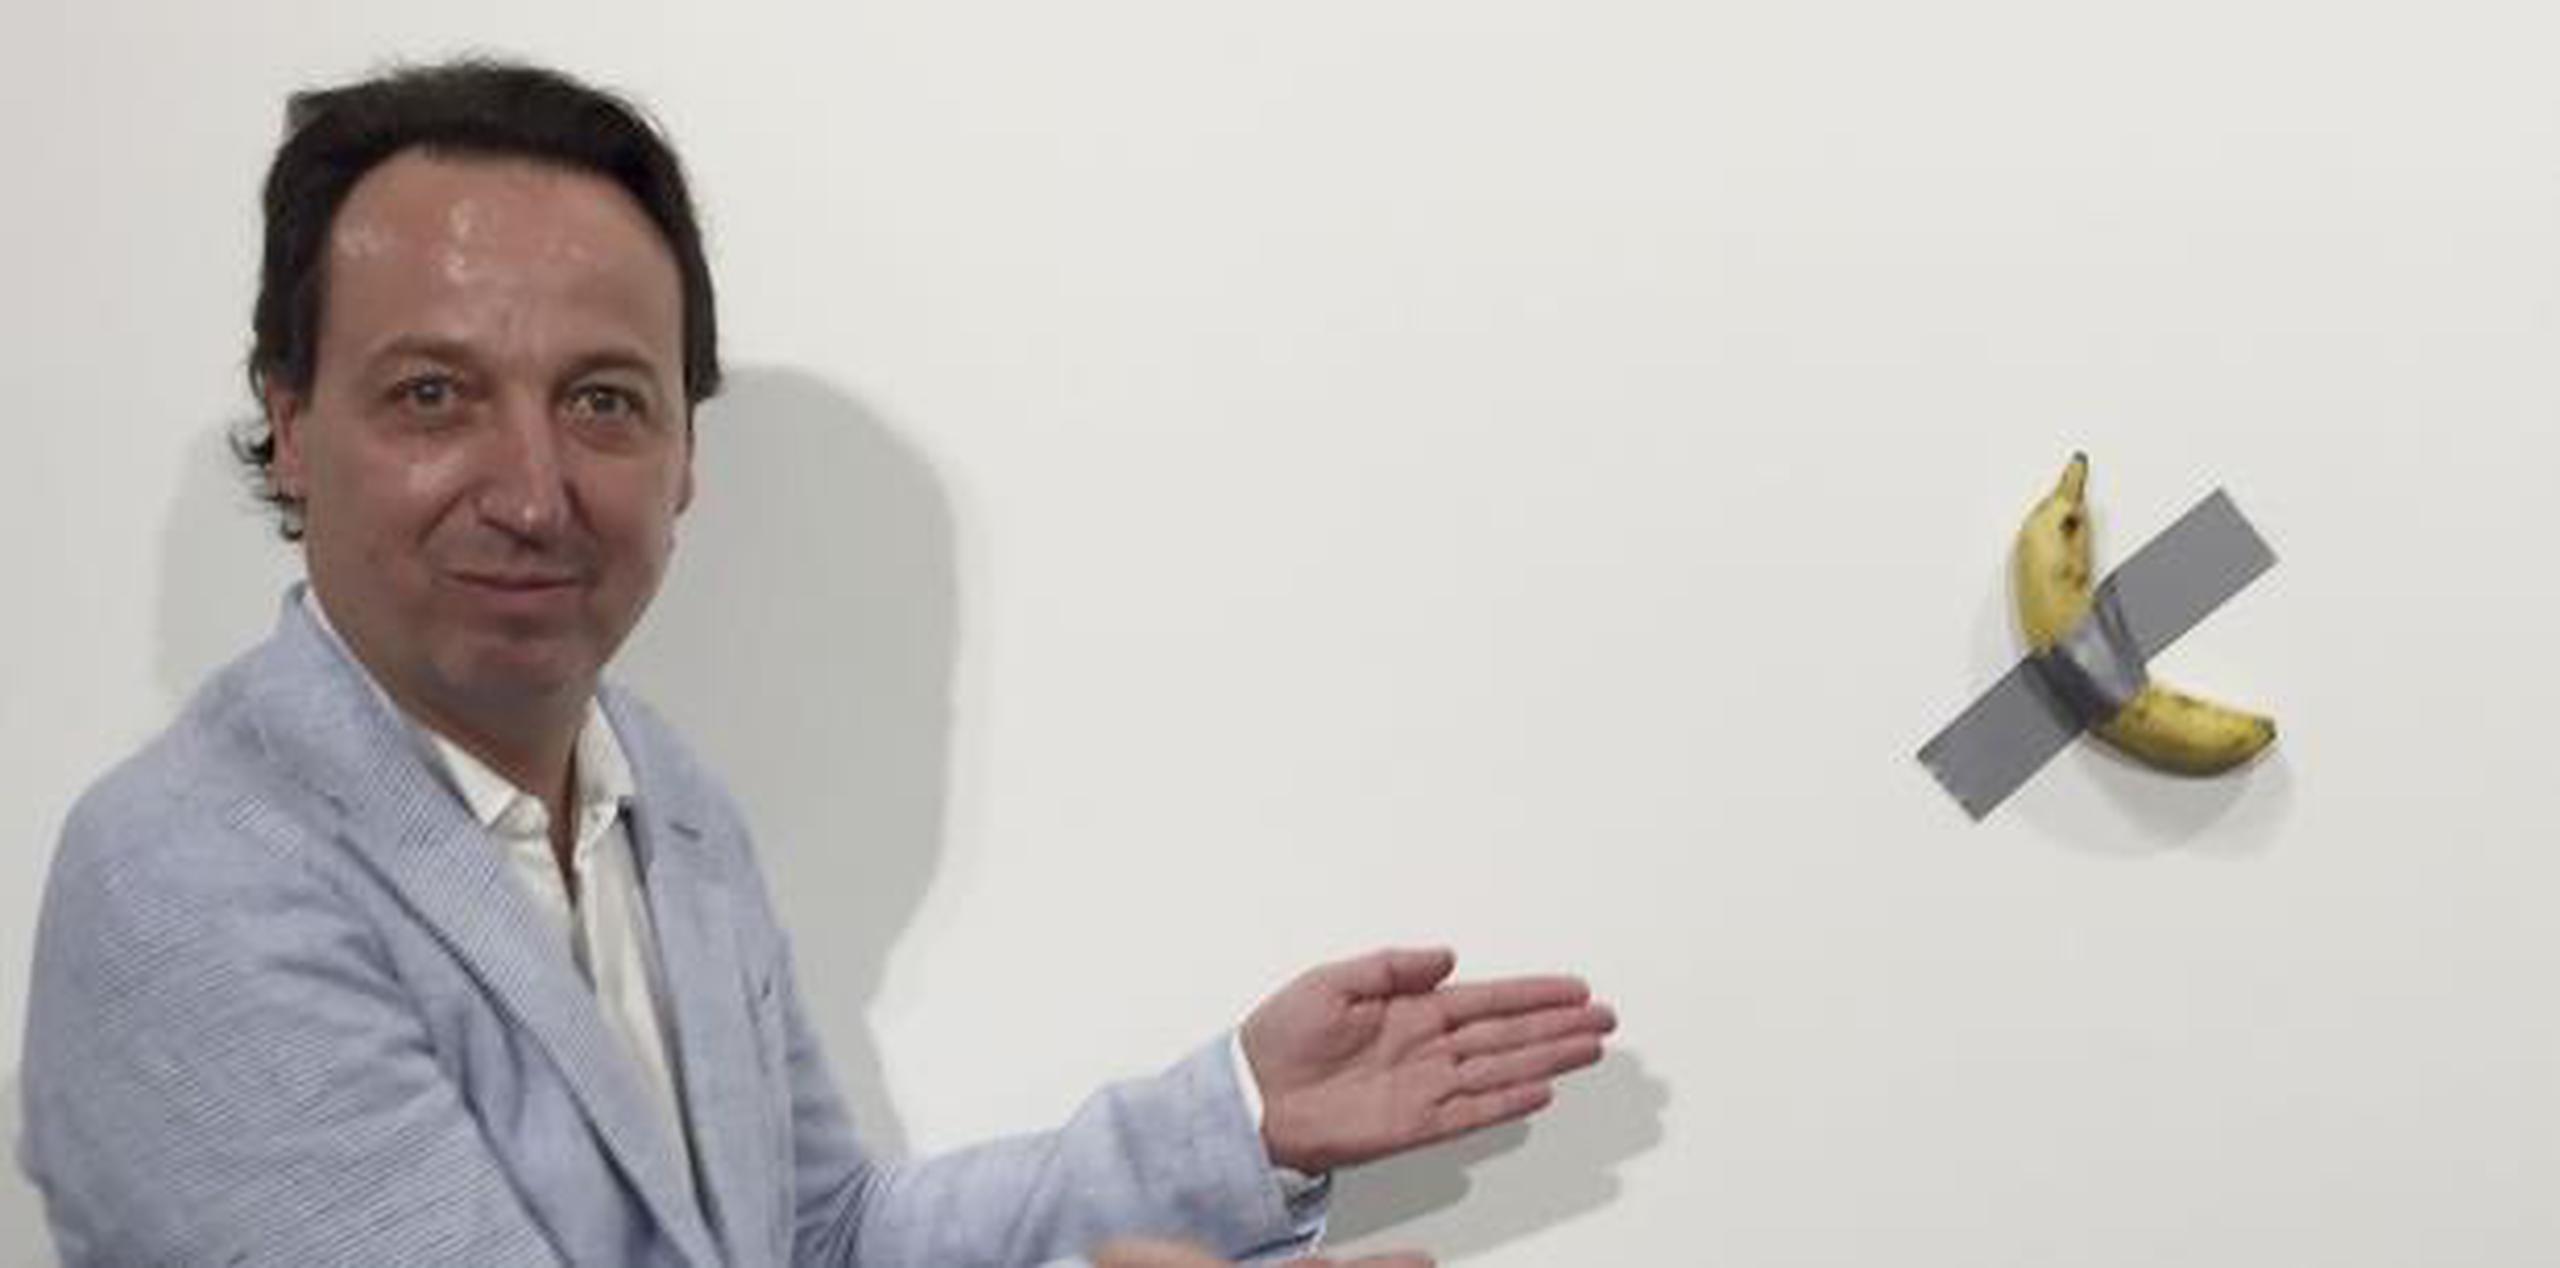 El dueño de la galería Emmanuel Perrotin posa junto a la obra "Comedian" del artista italiano Maurizio Cattlelan durante su exhibición en la feria Art Basel Miami. (Siobhan Morrissey vía AP)